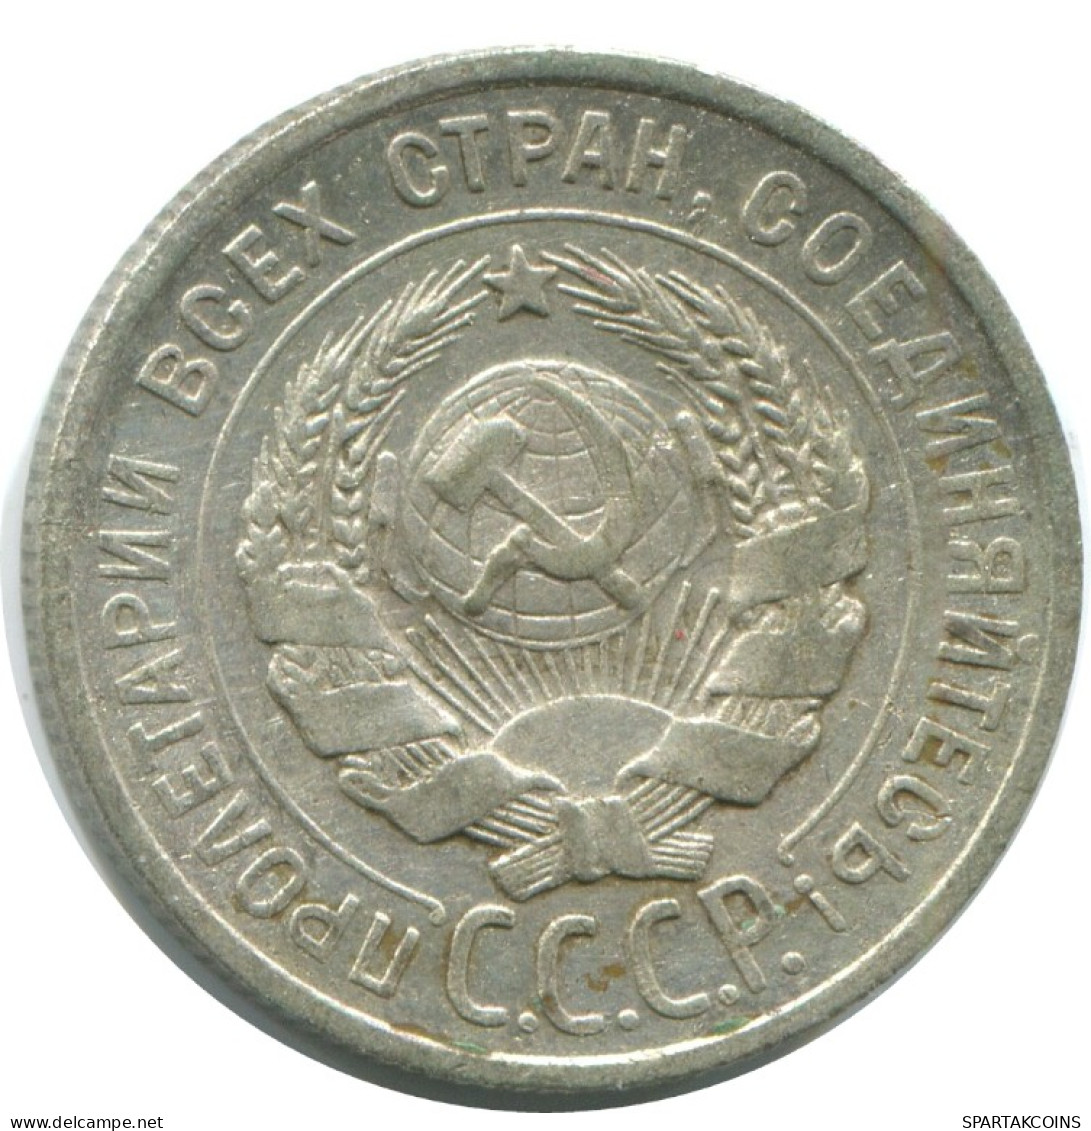 20 KOPEKS 1925 RUSSLAND RUSSIA USSR SILBER Münze HIGH GRADE #AF321.4.D.A - Russland